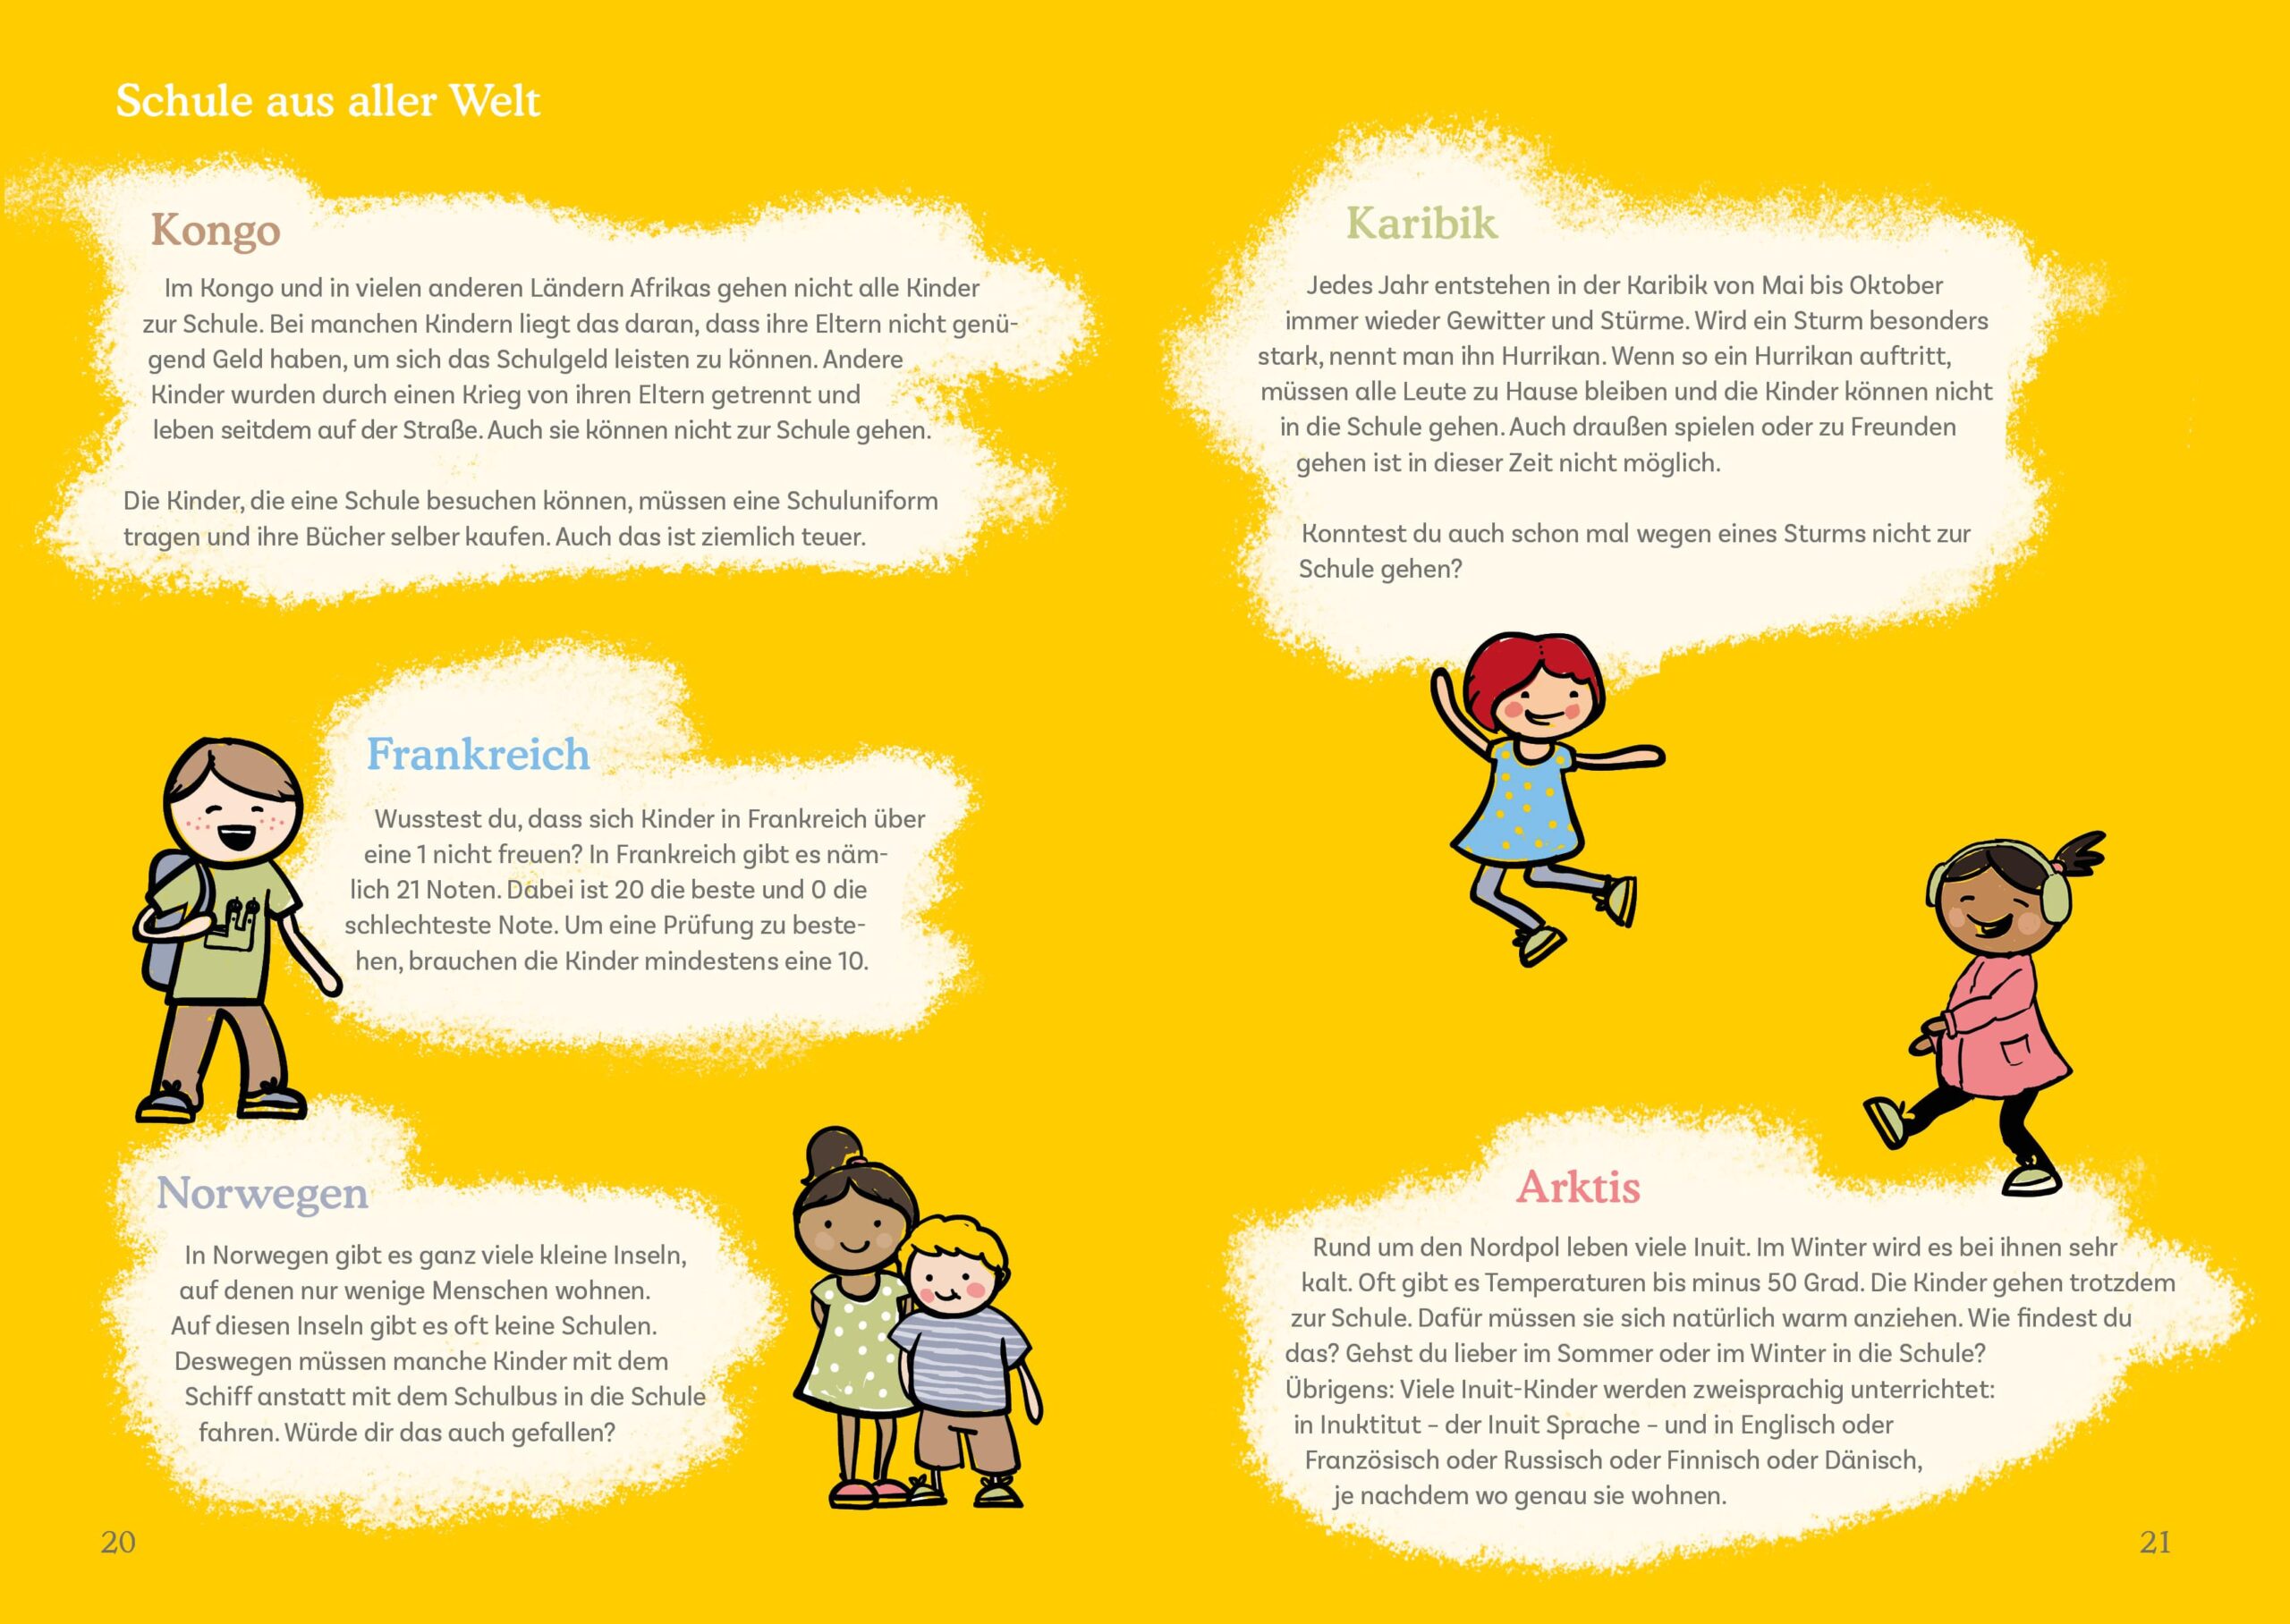 Gestaltet wurde eine Doppelseite mit Informationen über Fakten von Schule aus aller Welt. Neben den Fakten wurden Illustrationen von verschiedenen Kindl auf der Seite verteilt.